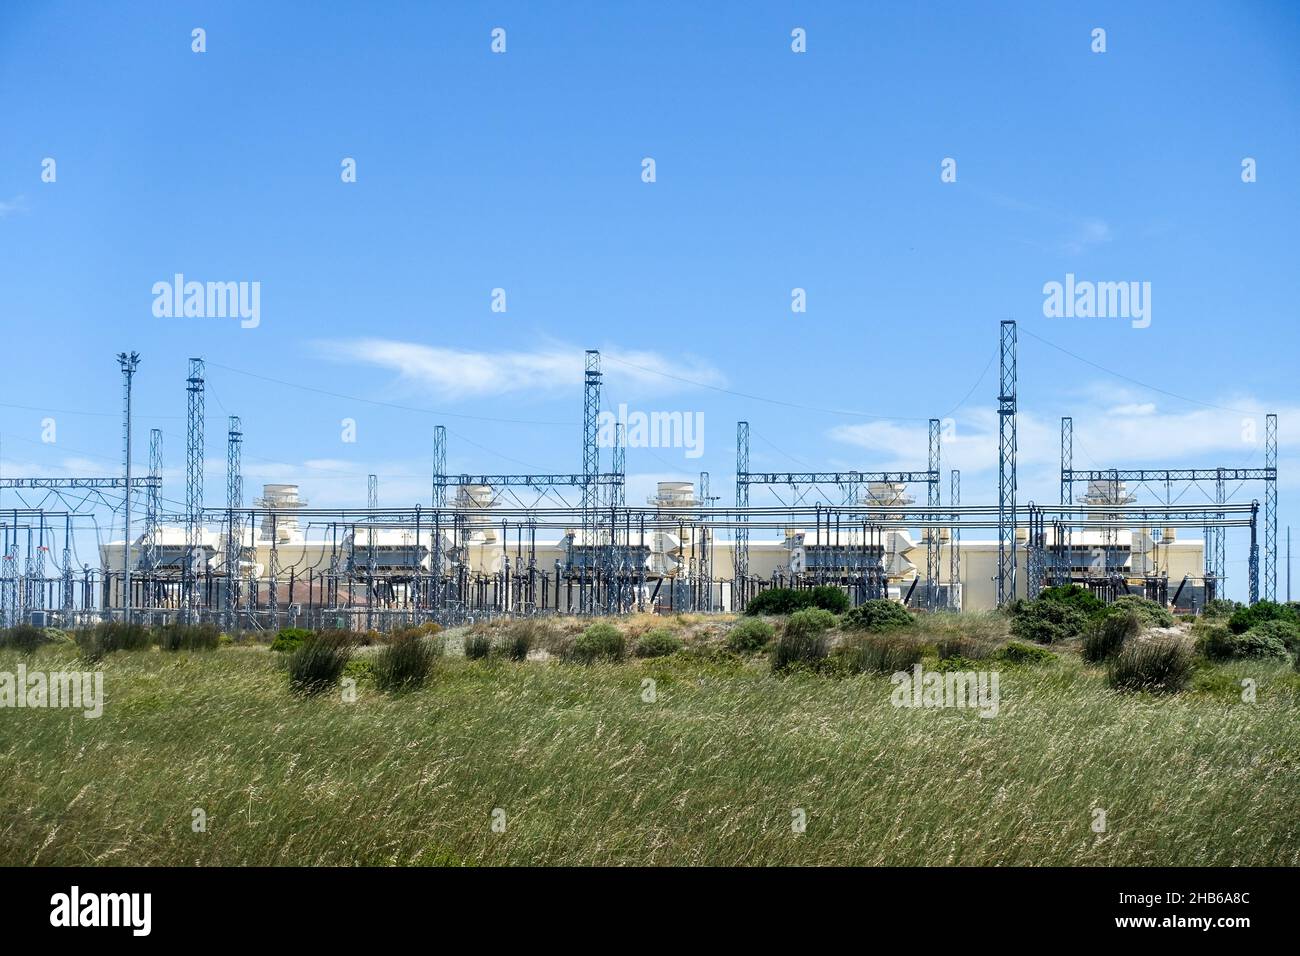 Ankerlig power station, Atlantis, South Africa Stock Photo